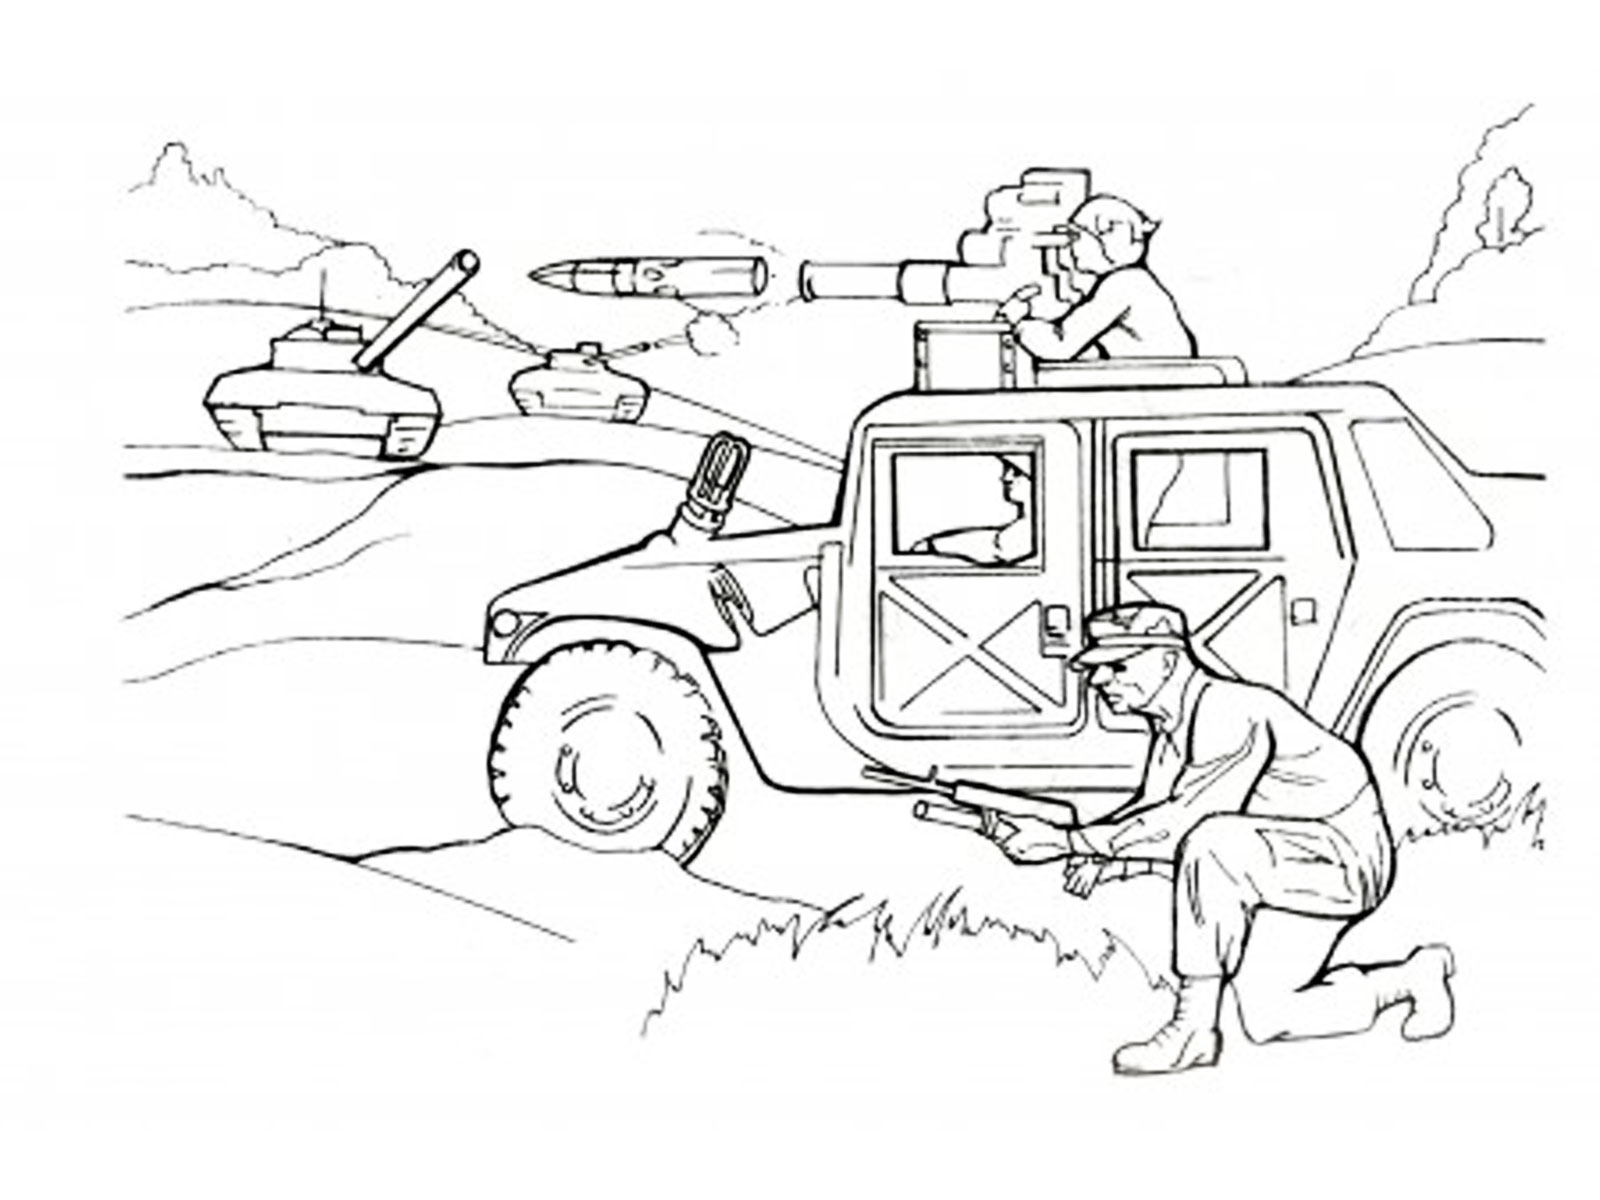  раскраски на тему война для детей. Интересные раскраски с танками, солдатами для мальчиков и девочек. Раскраски на тему война для детей    